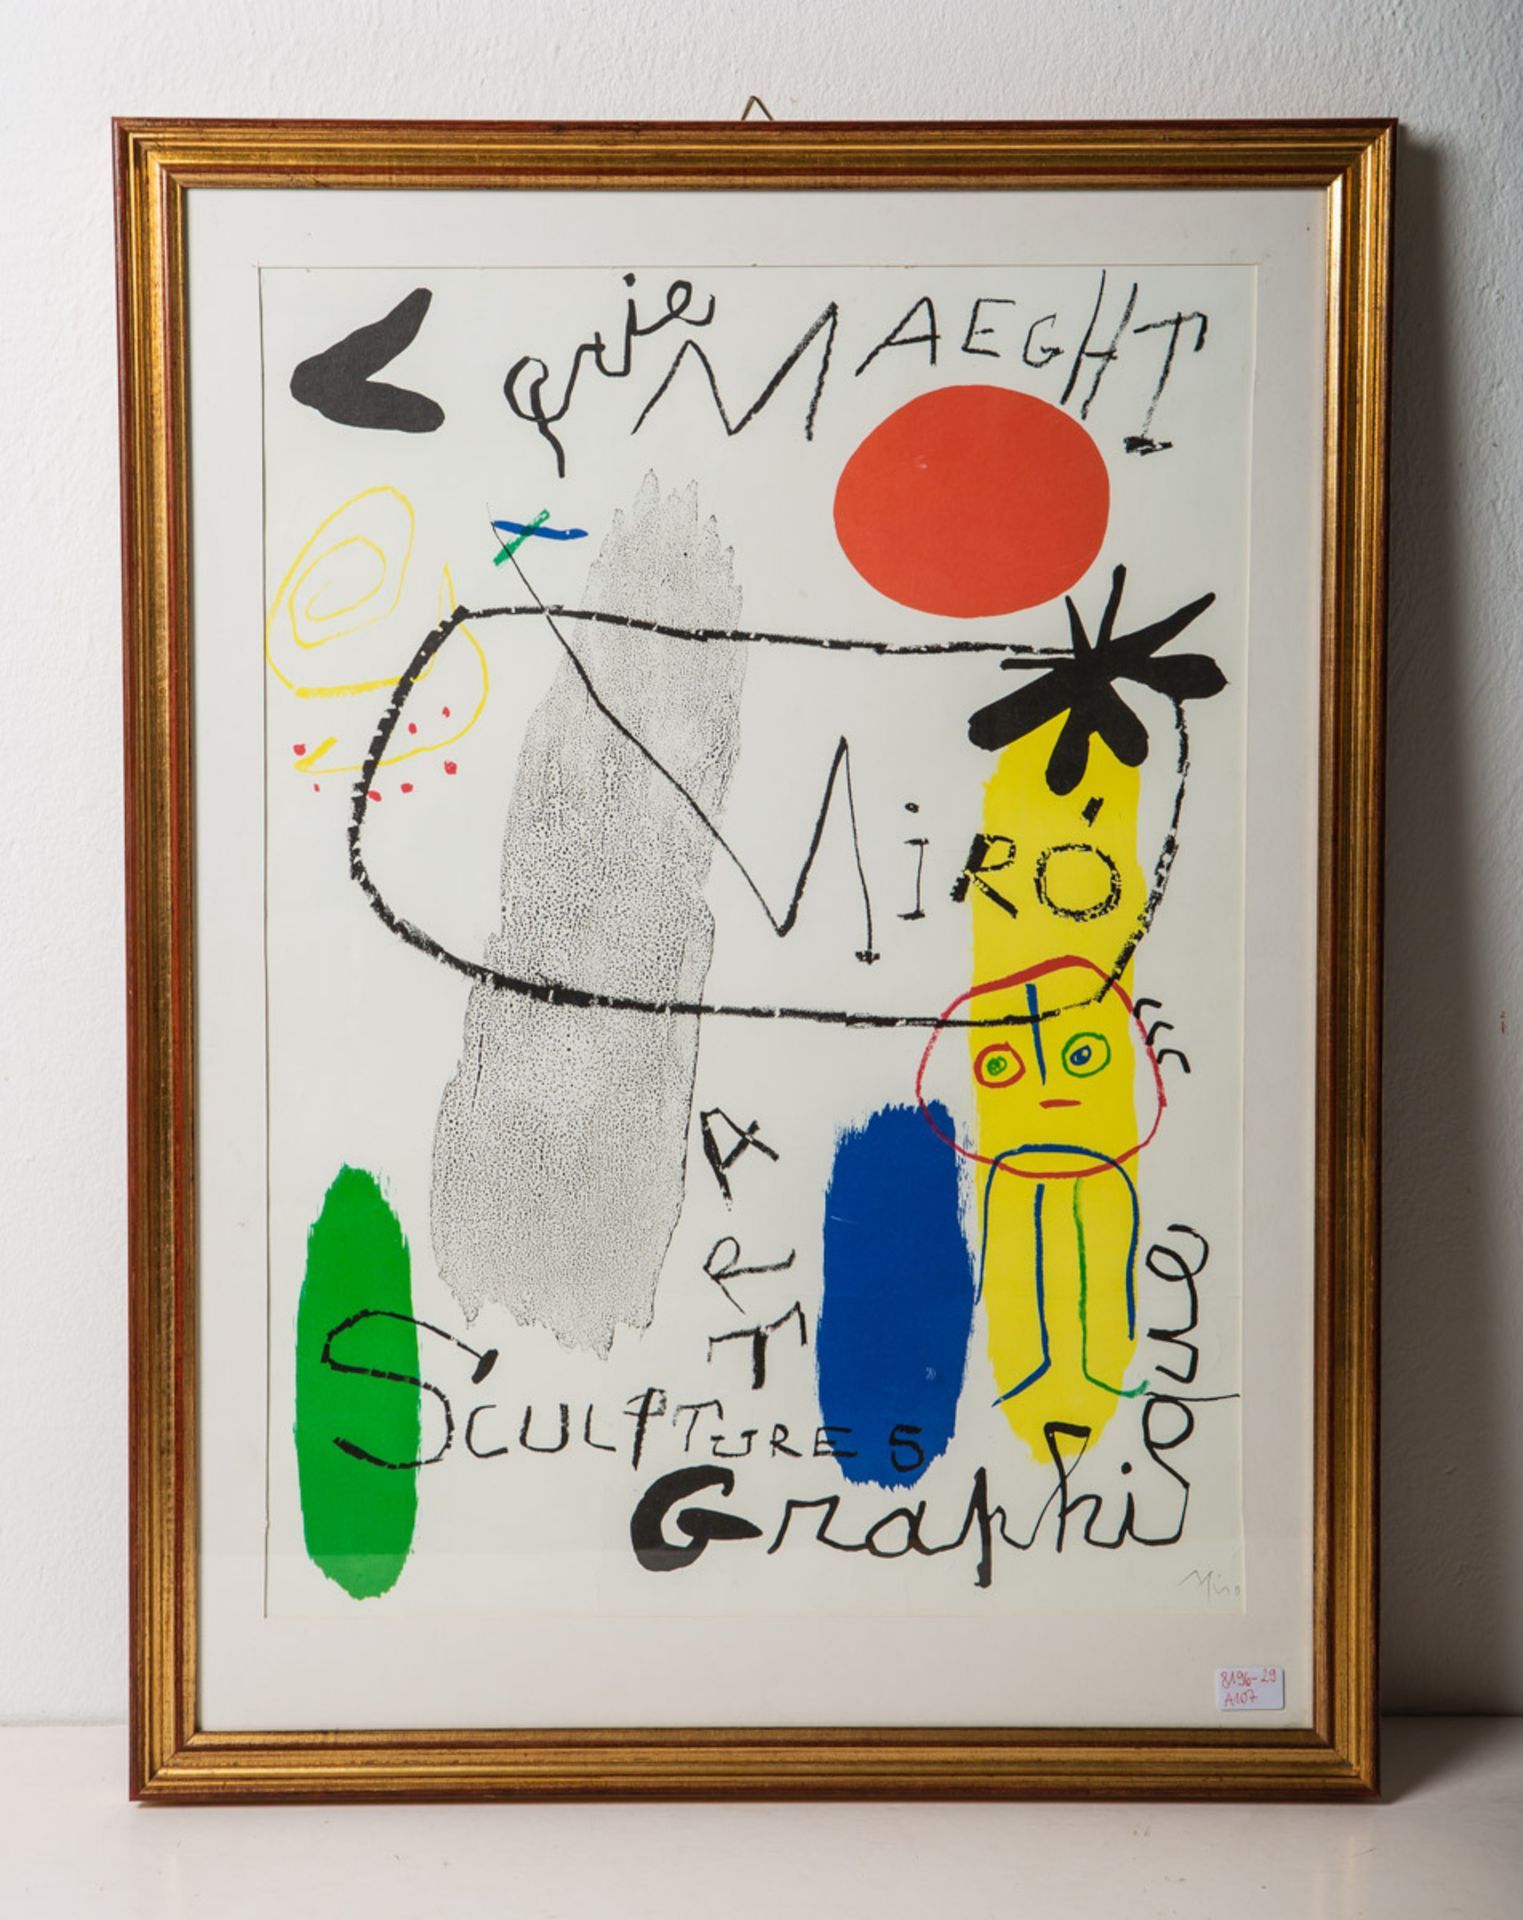 Miró, Joan (1893 - 1983), "Galerie Maeght"